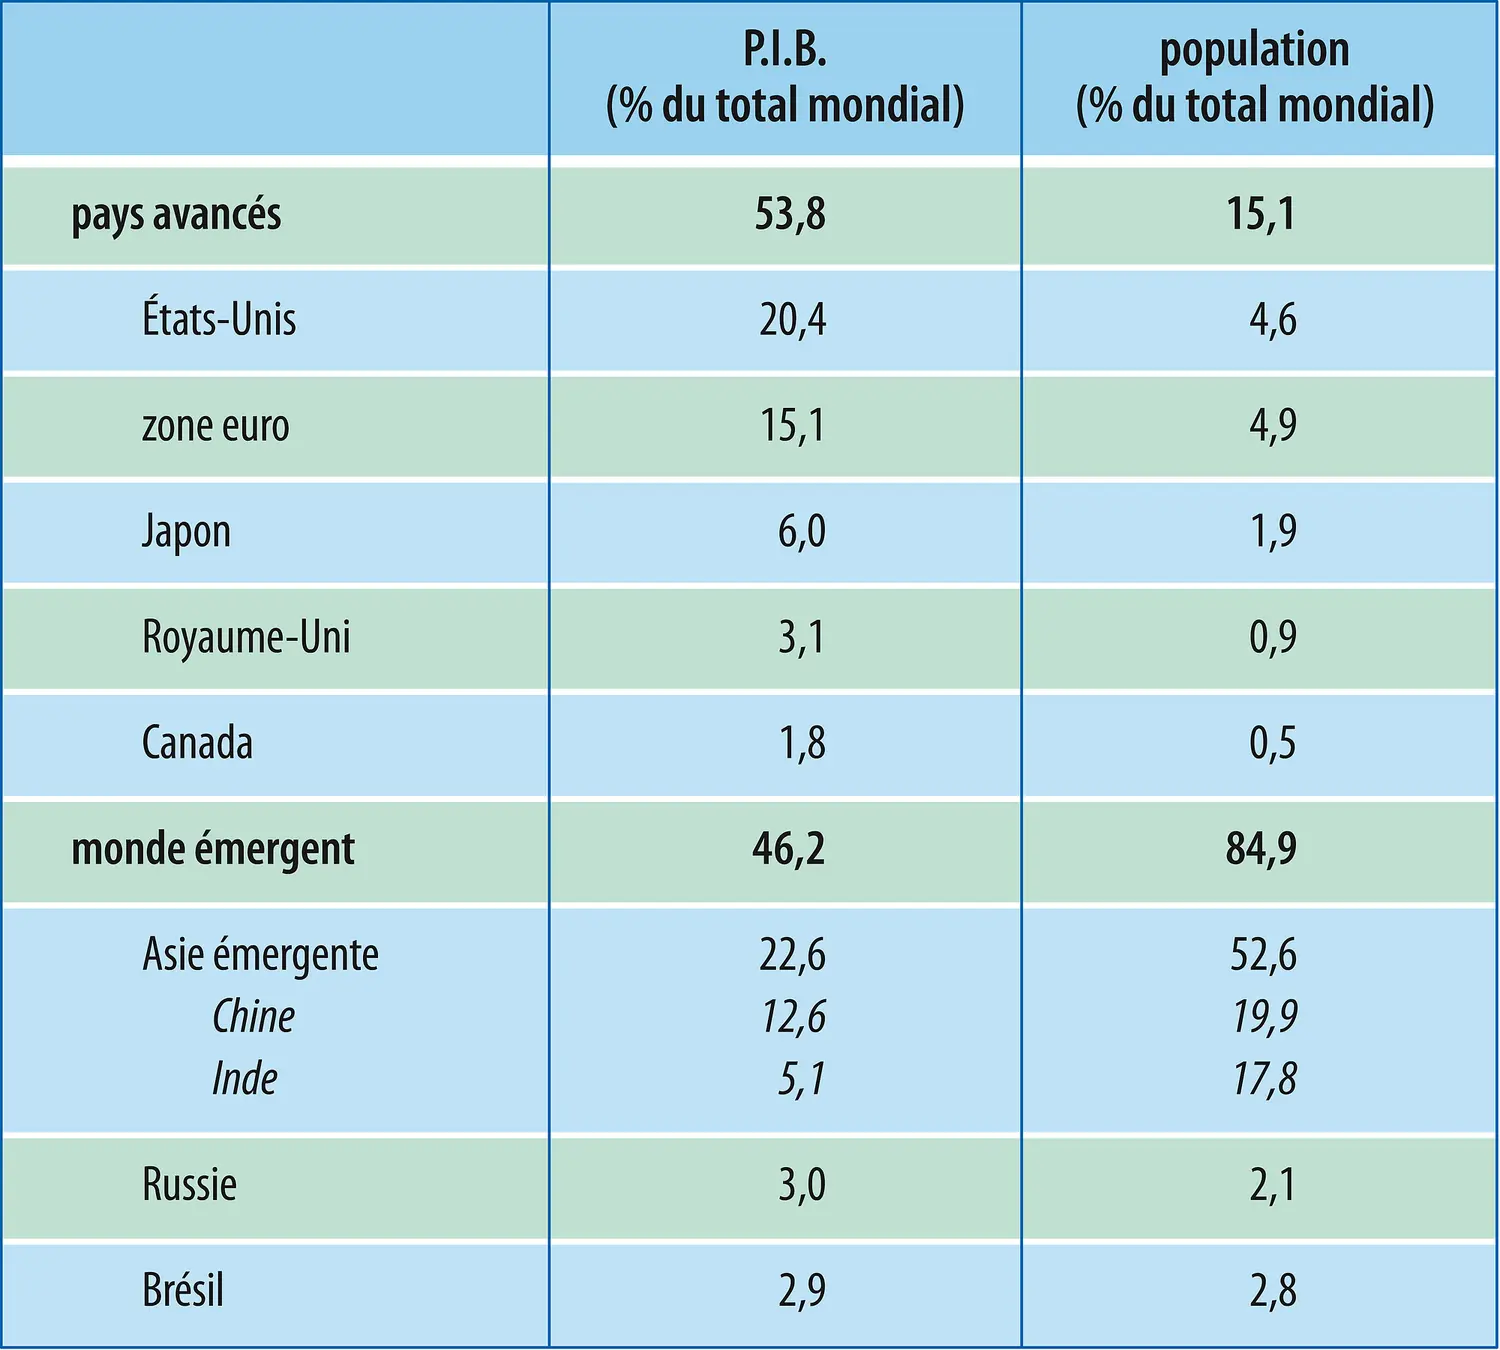 Économie mondiale (2010) : P.I.B. et population